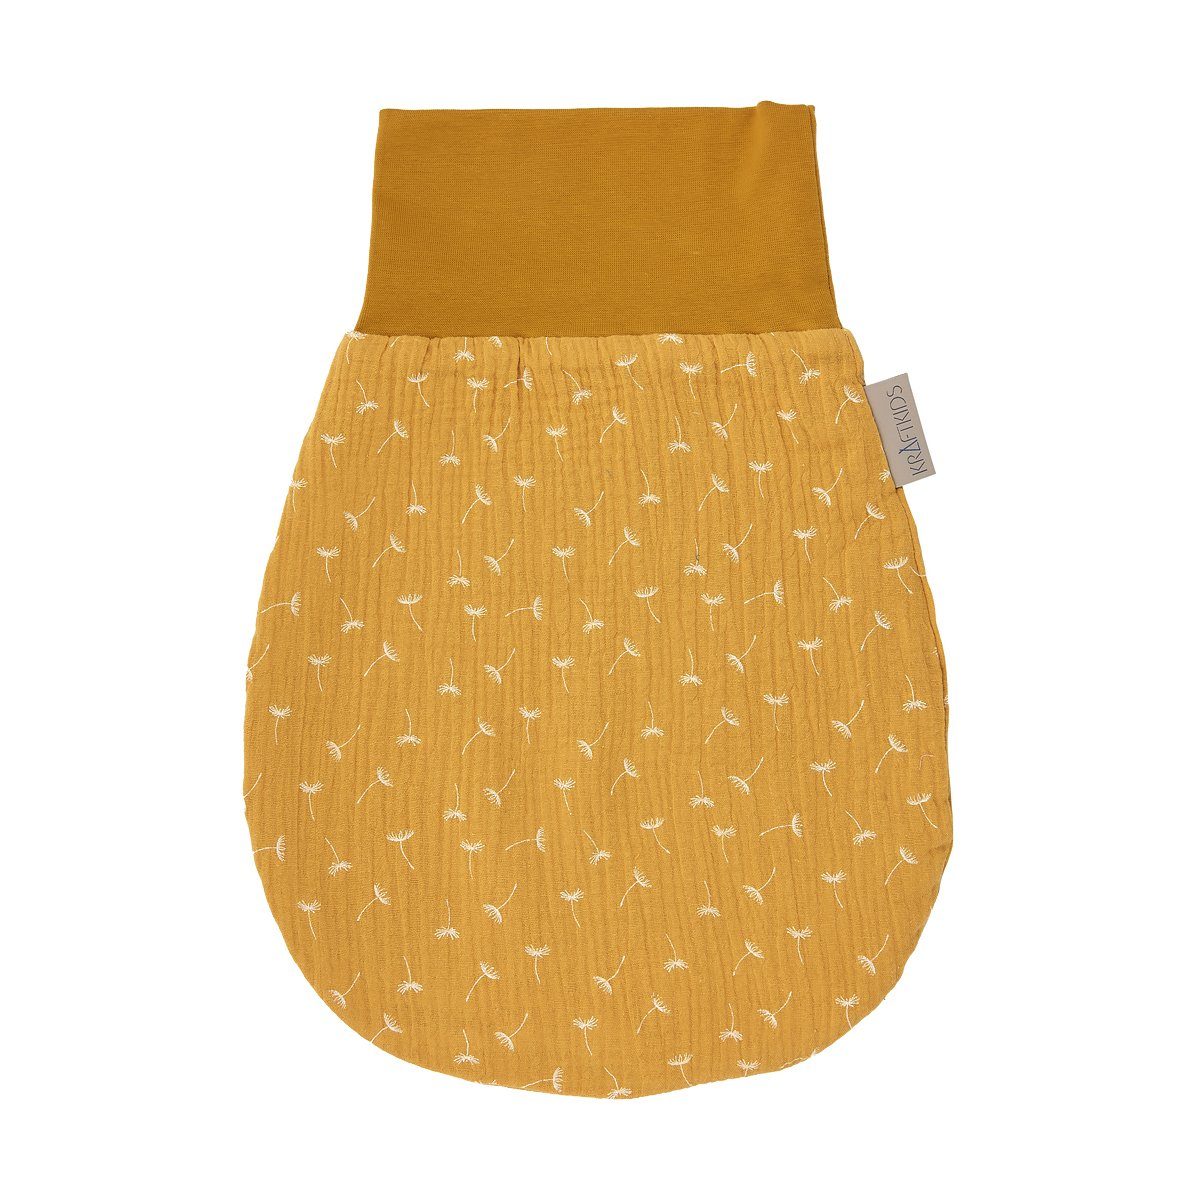 KraftKids Babyschlafsack Musselin gelb Pusteblumen, Herbst/Winter-Variante, Stoff, warmer Baumwolle, Fleece hochwärtiger Innen 100